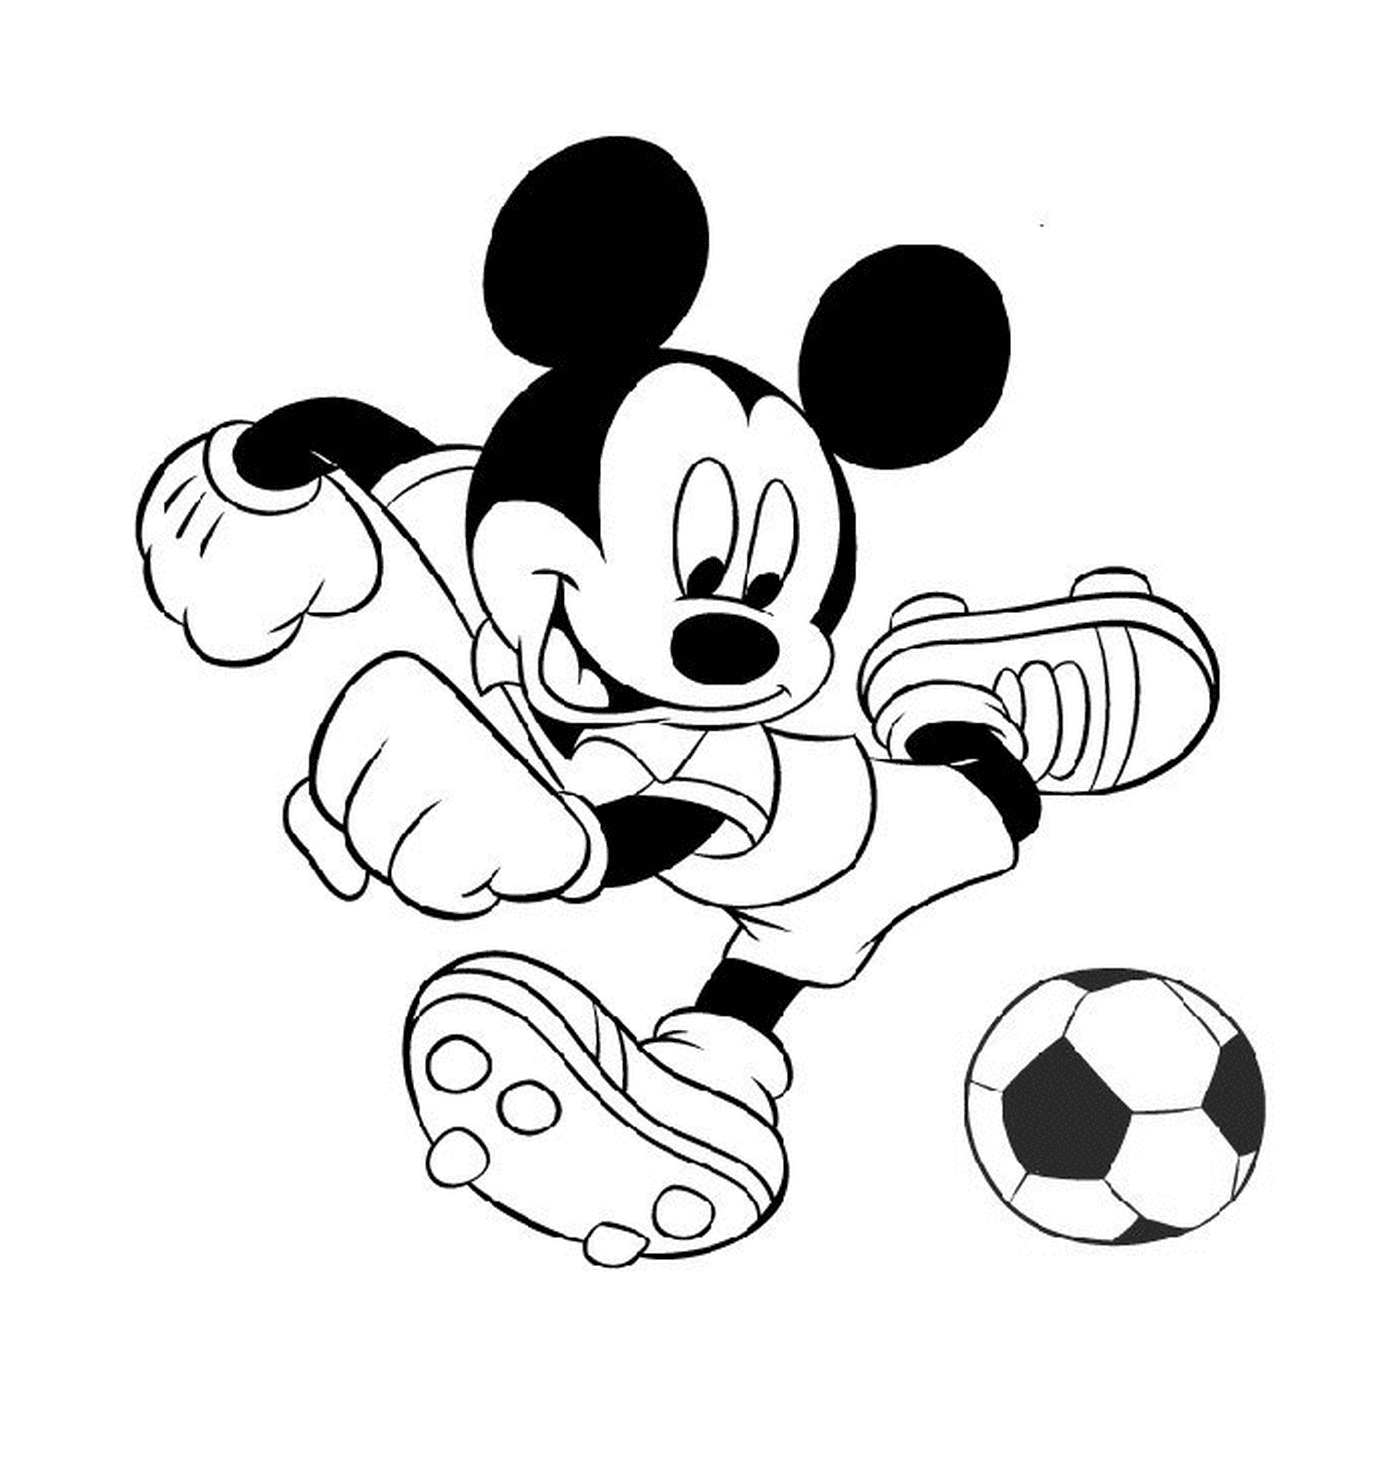  मिकी फुटबॉल खेलता है: एक फुटबॉल गेंद को लात मार रहा है 